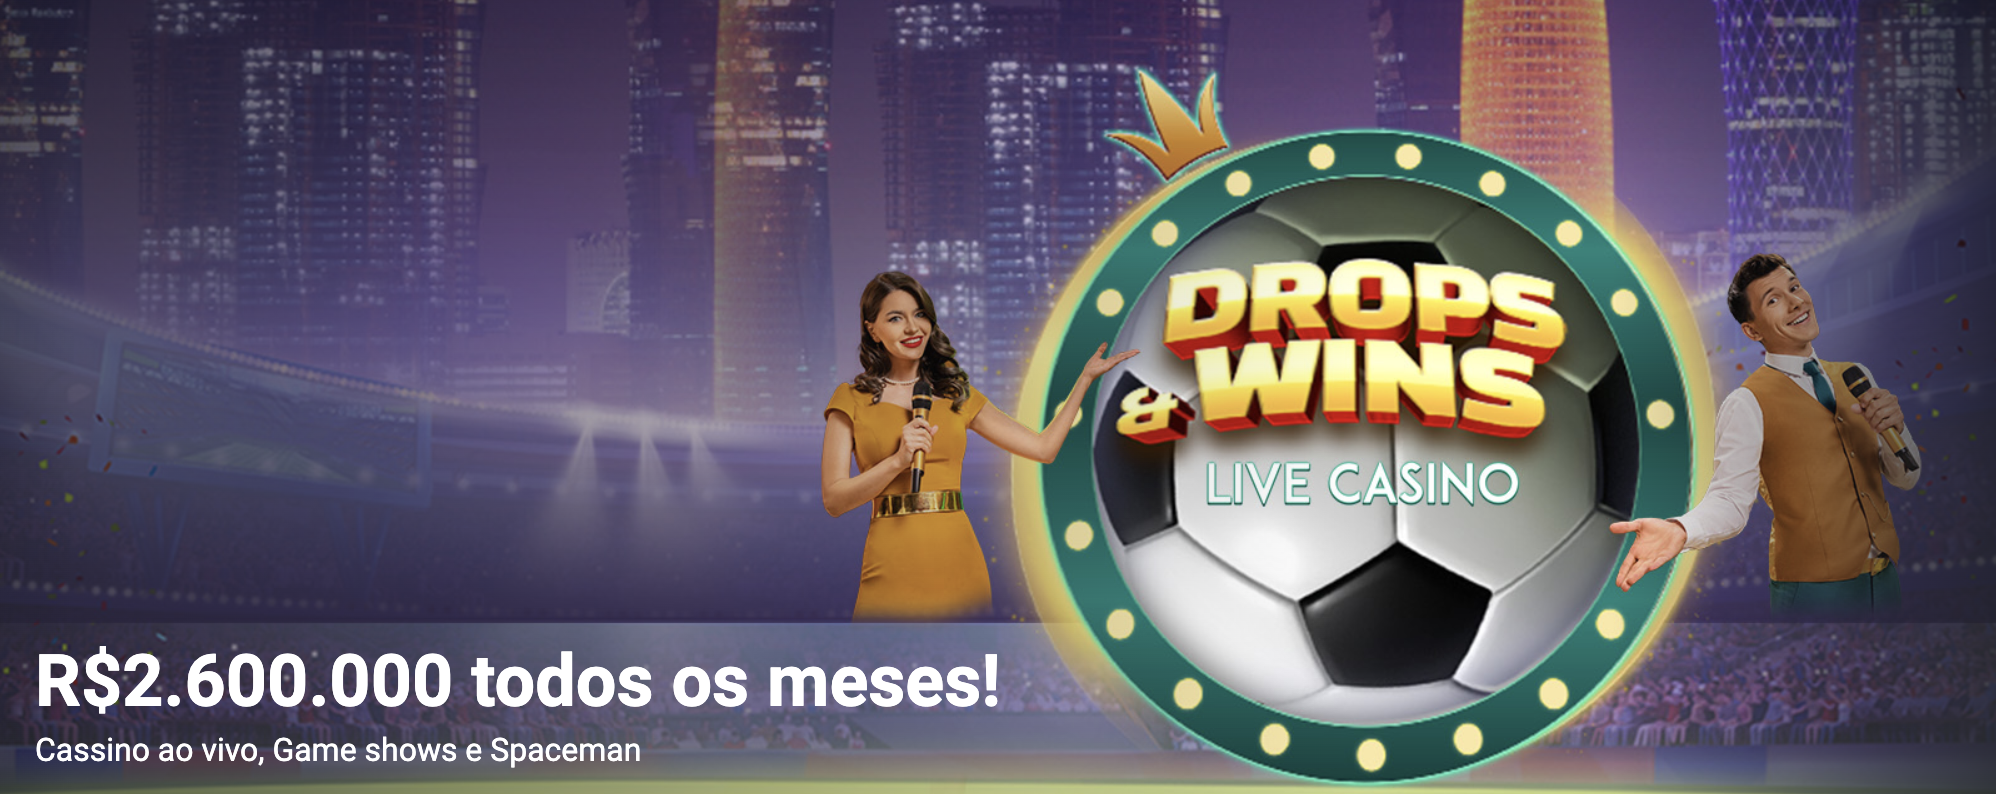 Betano Drops & Wins | R$2.600.000 em Prêmios Diários